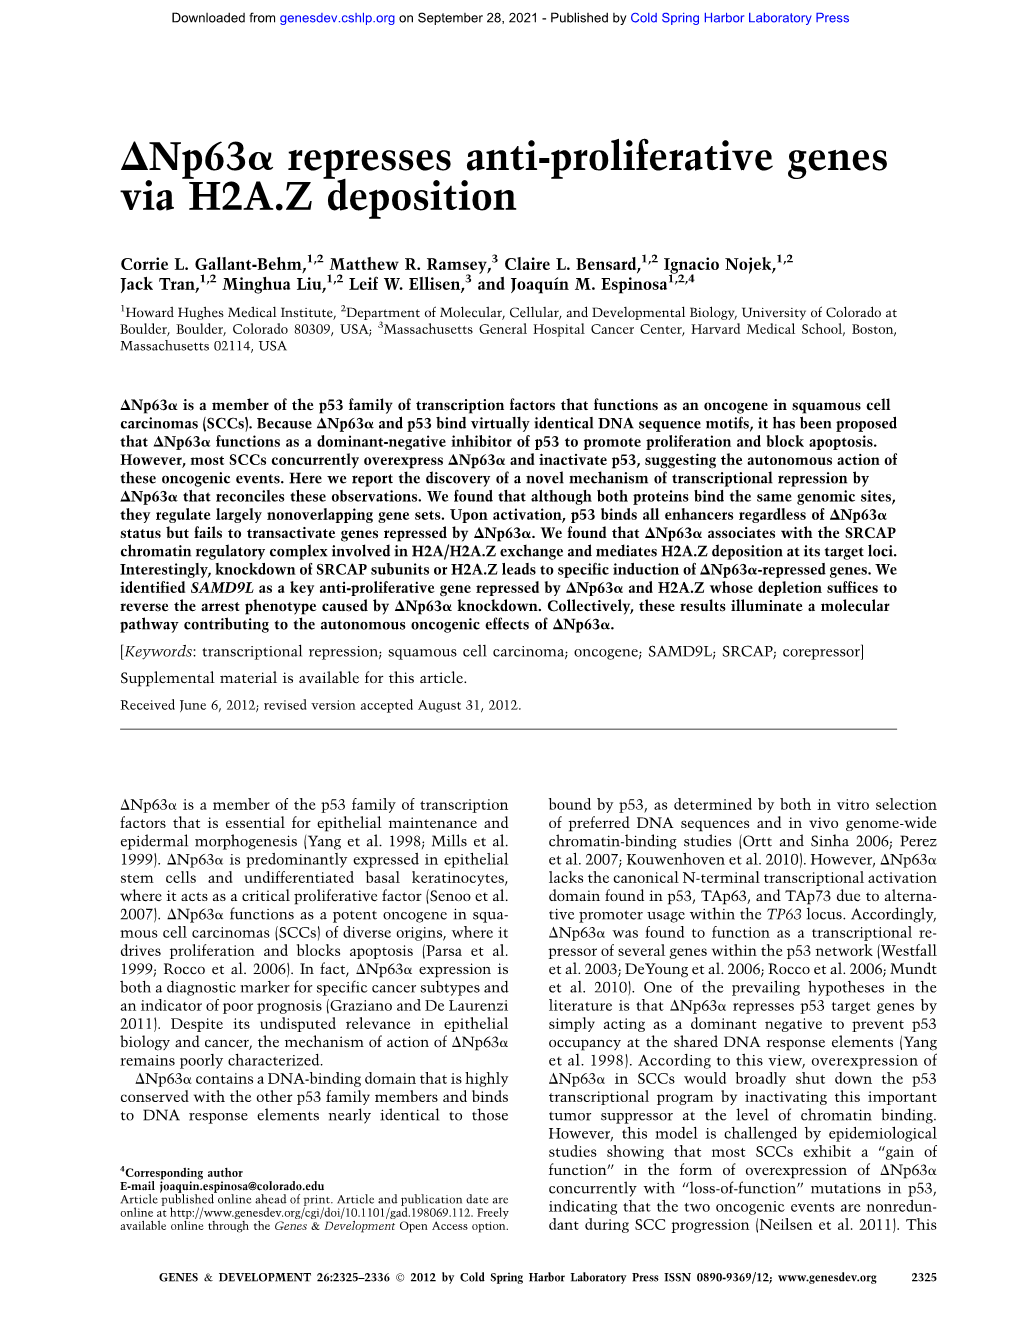 Dnp63a Represses Anti-Proliferative Genes Via H2A.Z Deposition